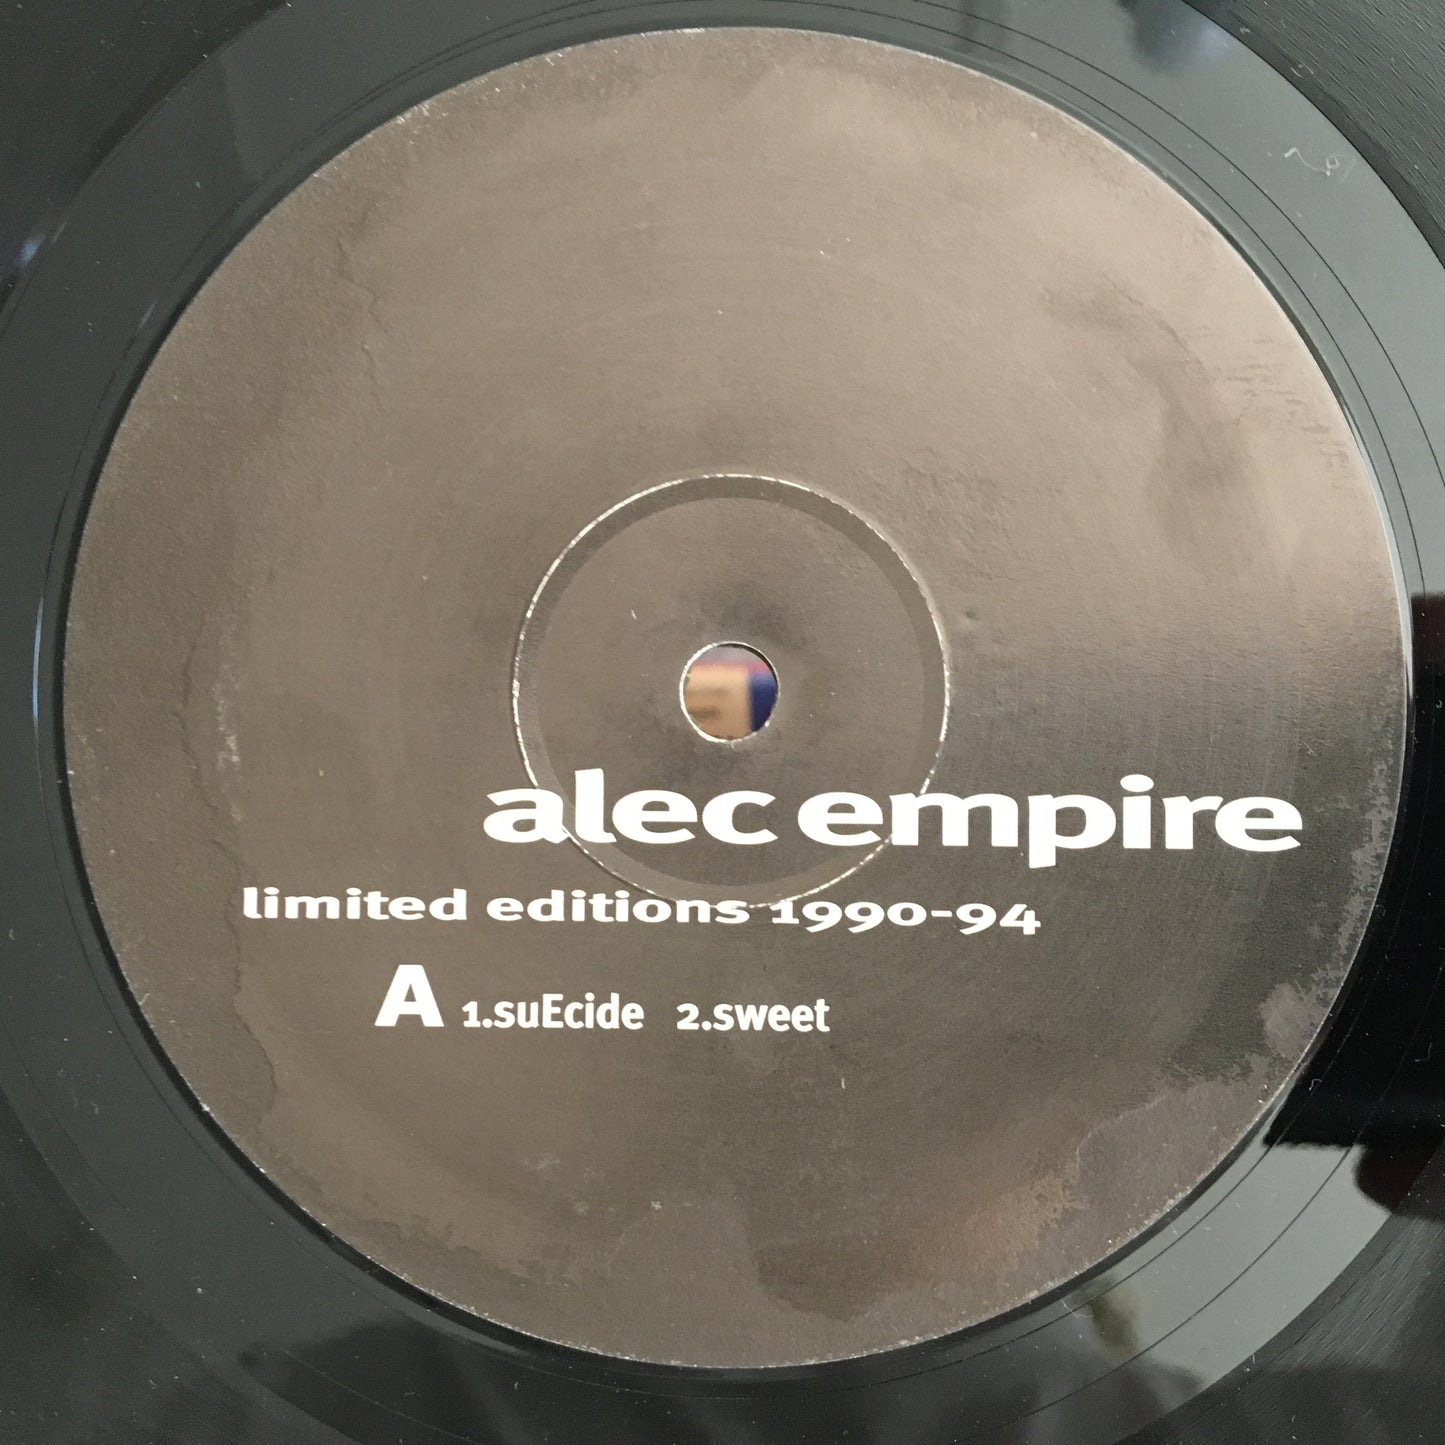 亚历克帝国 – 限量版 1990-94